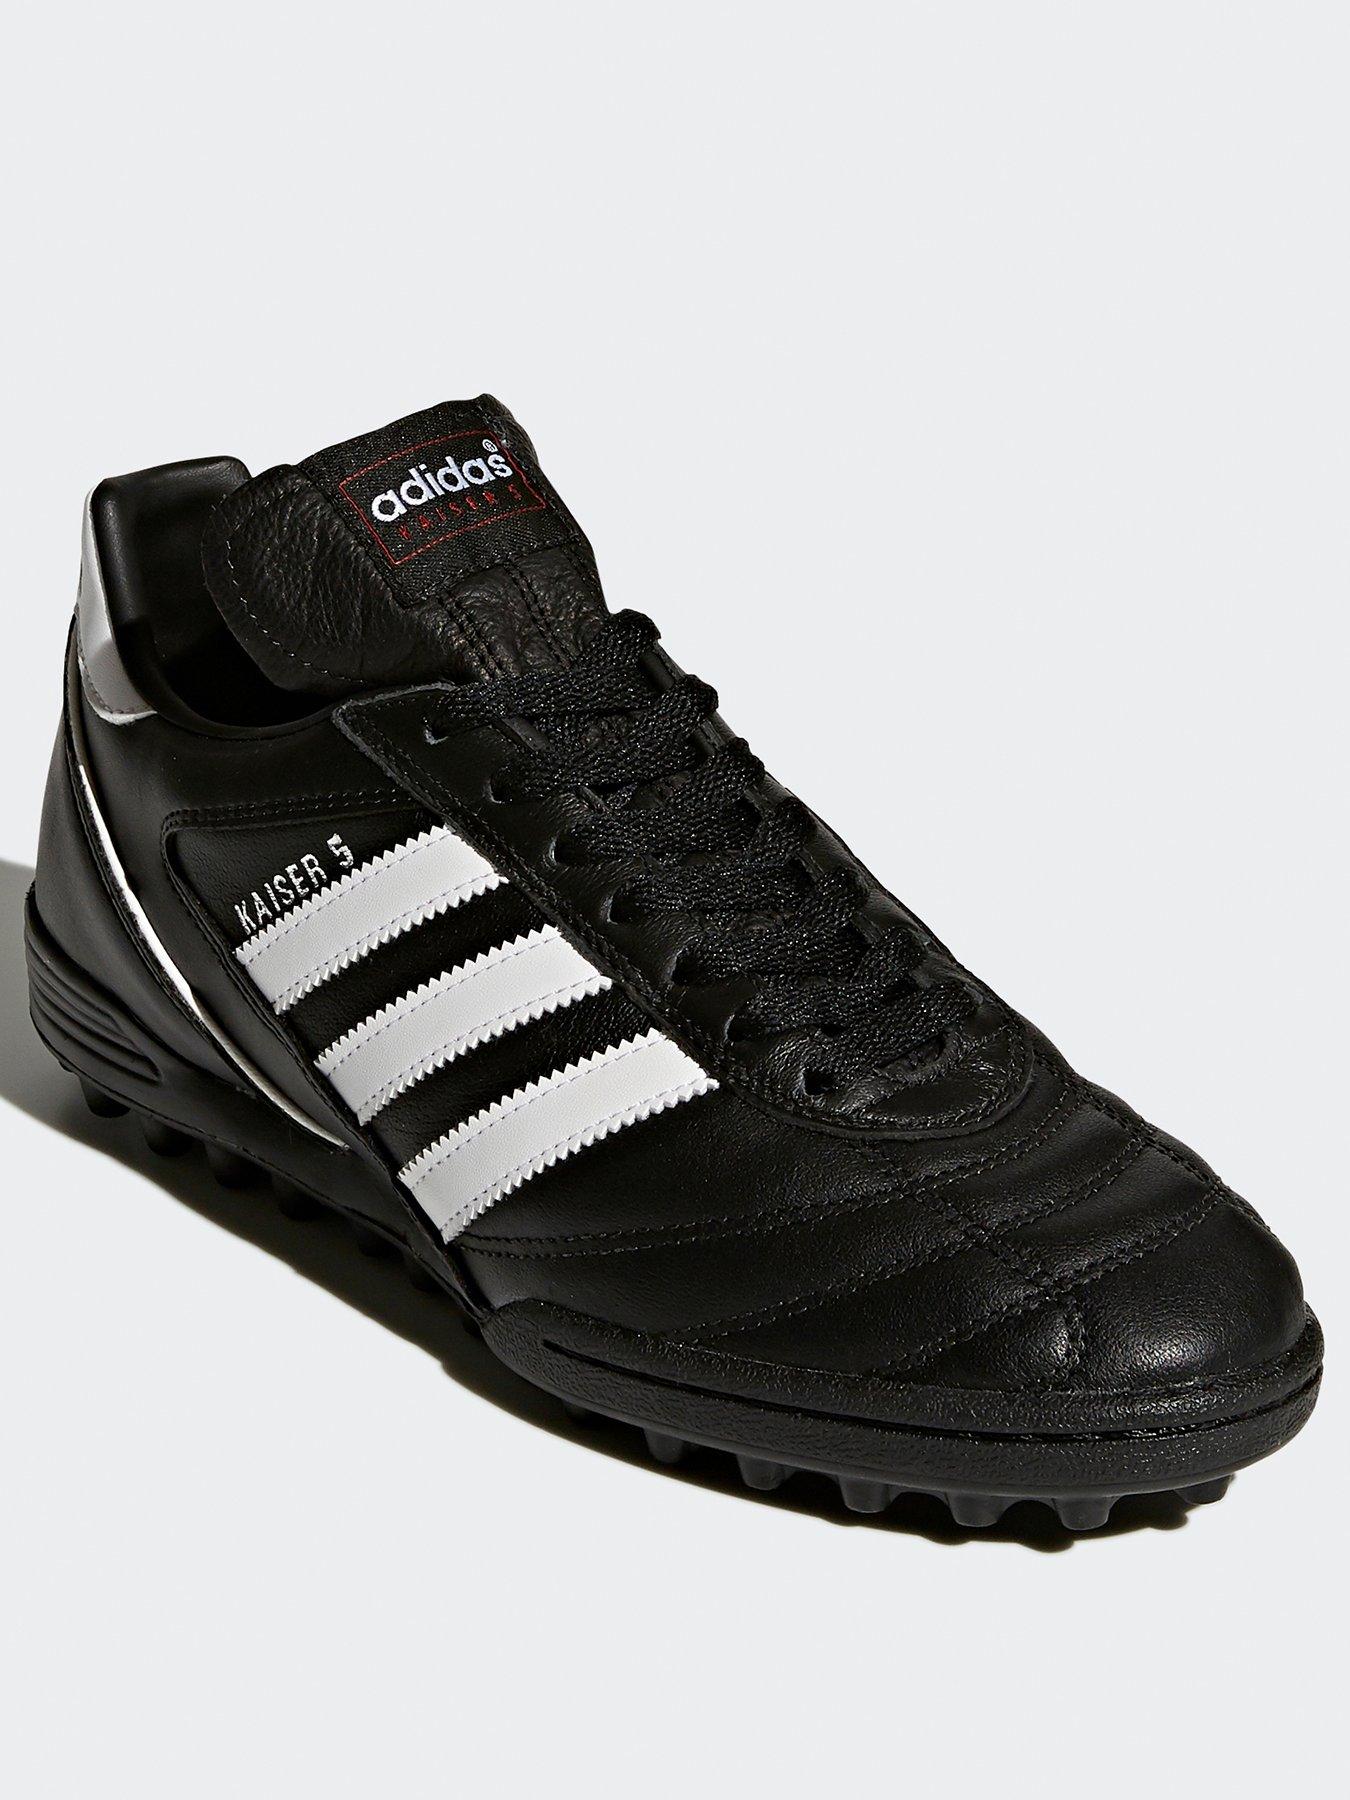 Football Kaiser 5 Team Boots